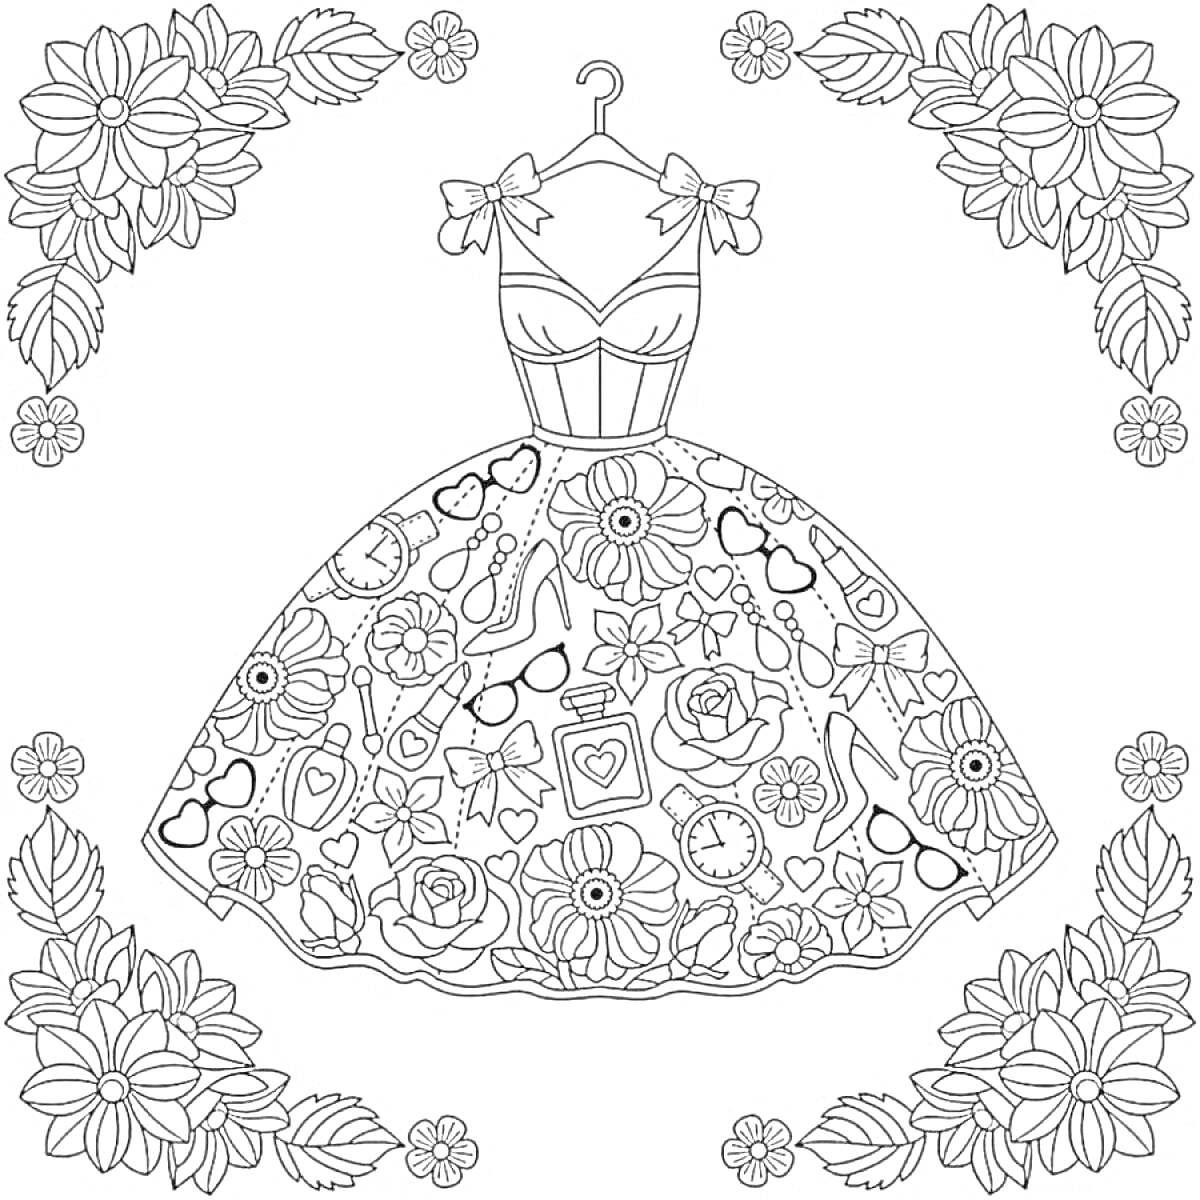 Раскраска Пышное платье с цветами, часами, сердечками, духами и другими декоративными элементами, окруженное цветочным орнаментом